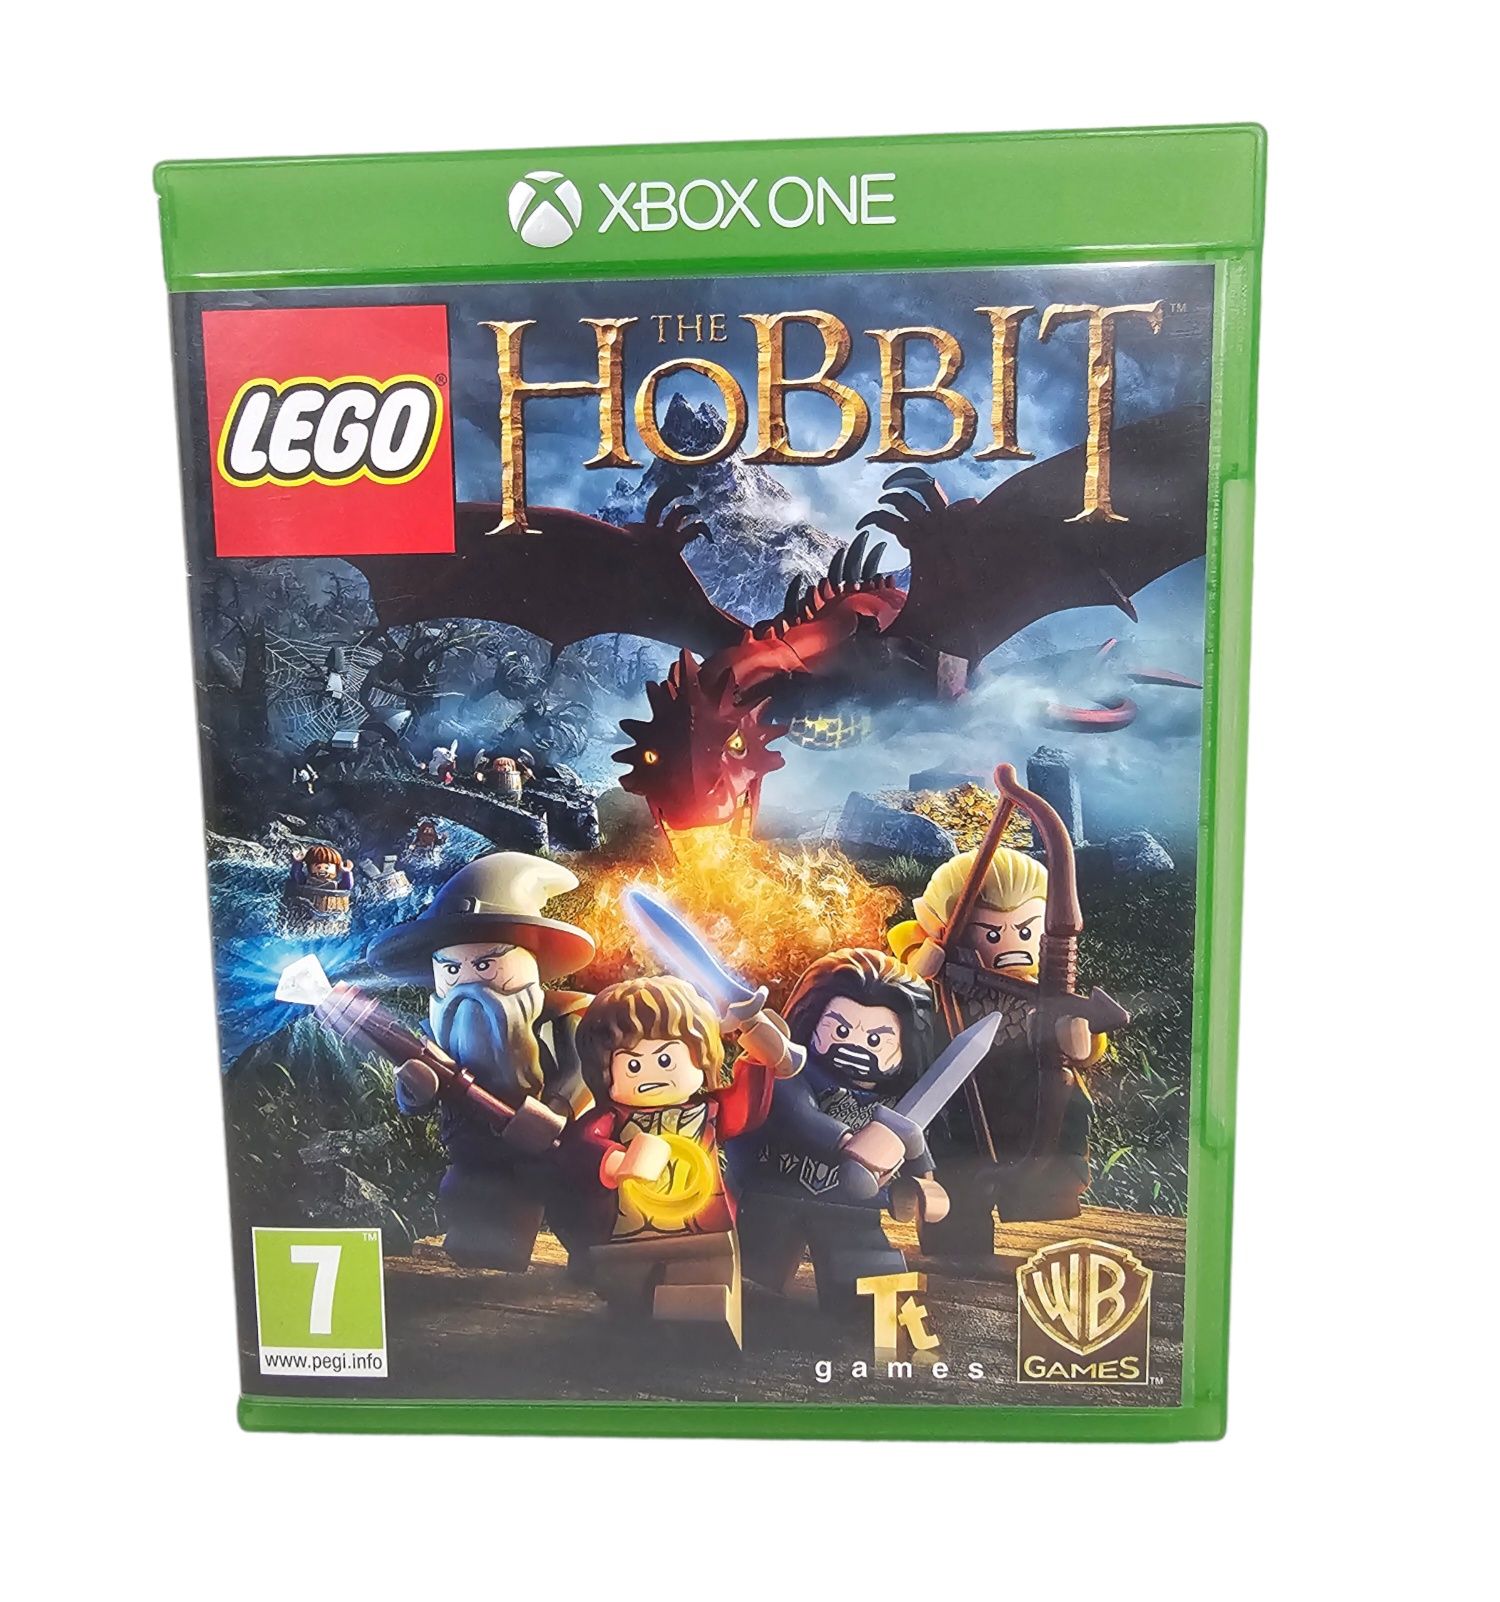 Lego Hobbit xbox one